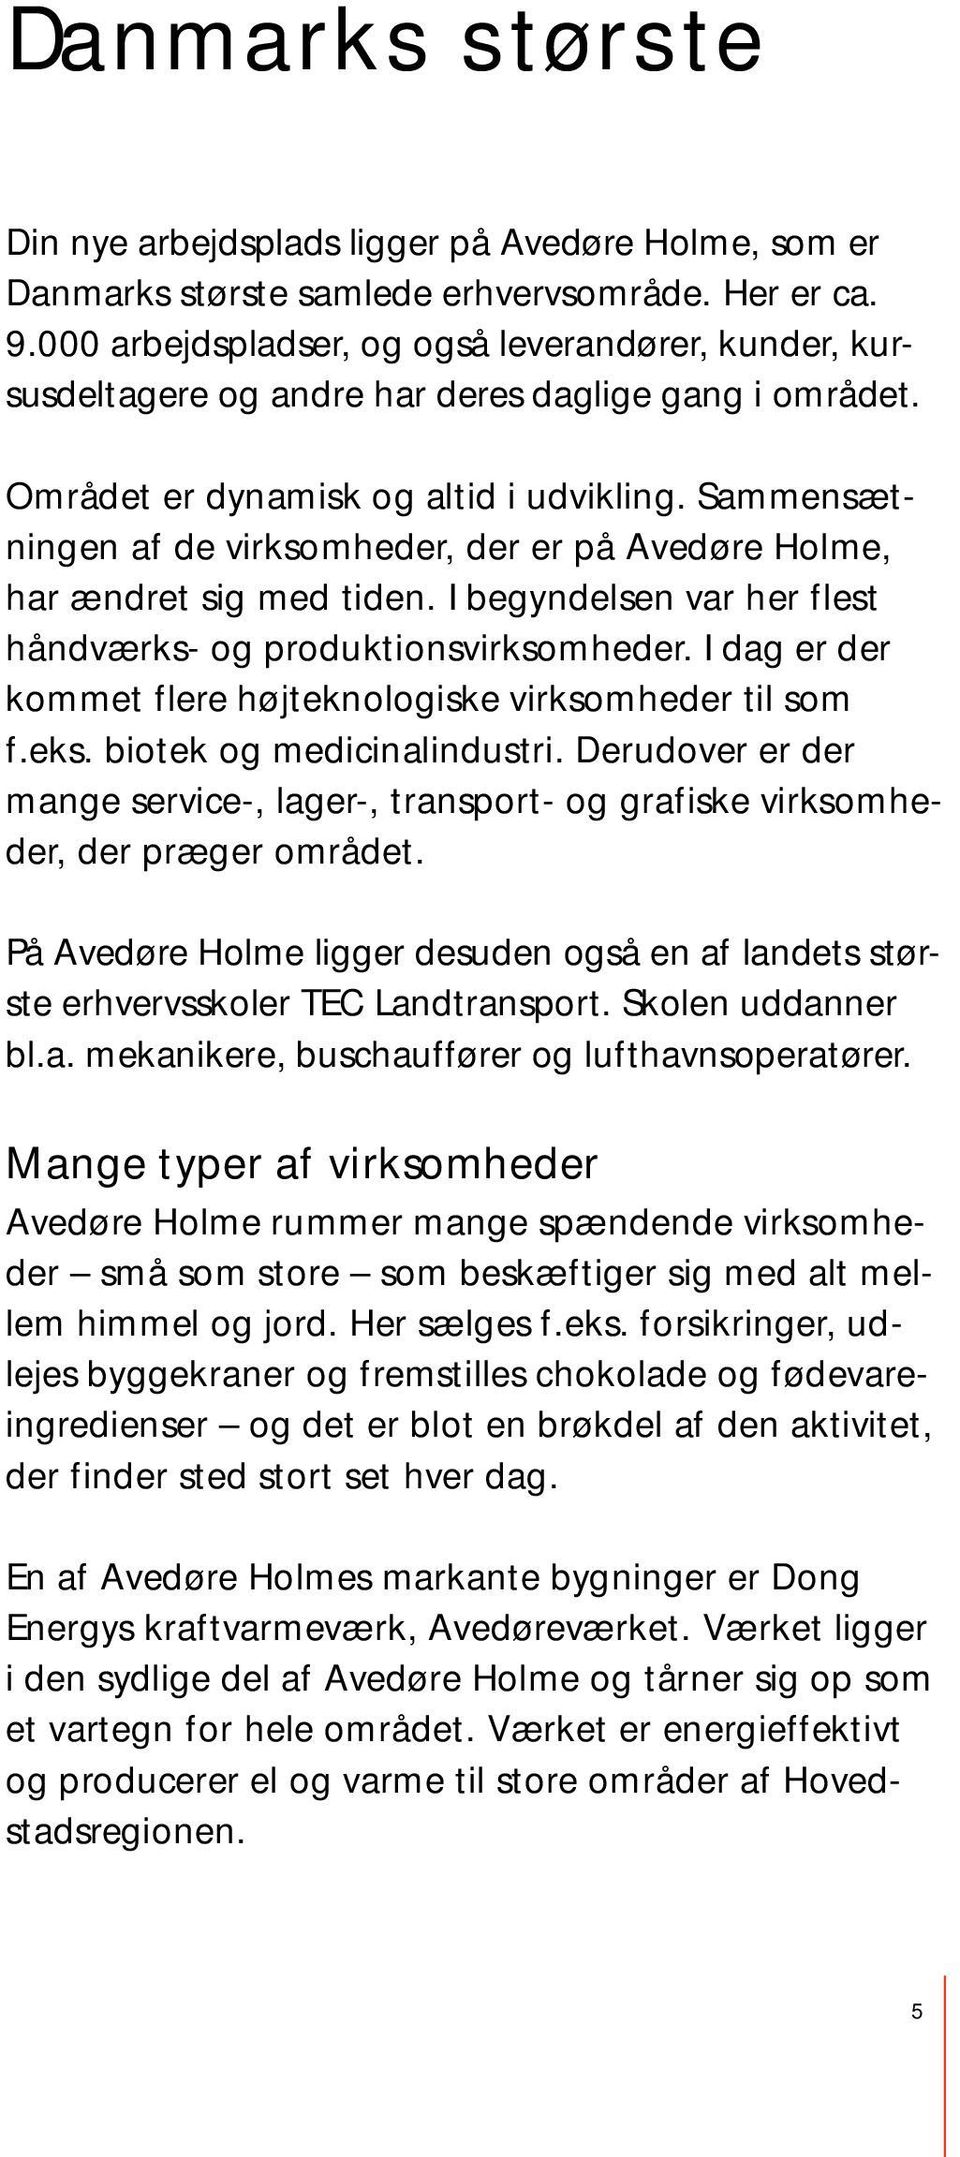 Sammensætningen af de virksomheder, der er på Avedøre Holme, har ændret sig med tiden. I begyndelsen var her flest håndværks- og produktionsvirksomheder.